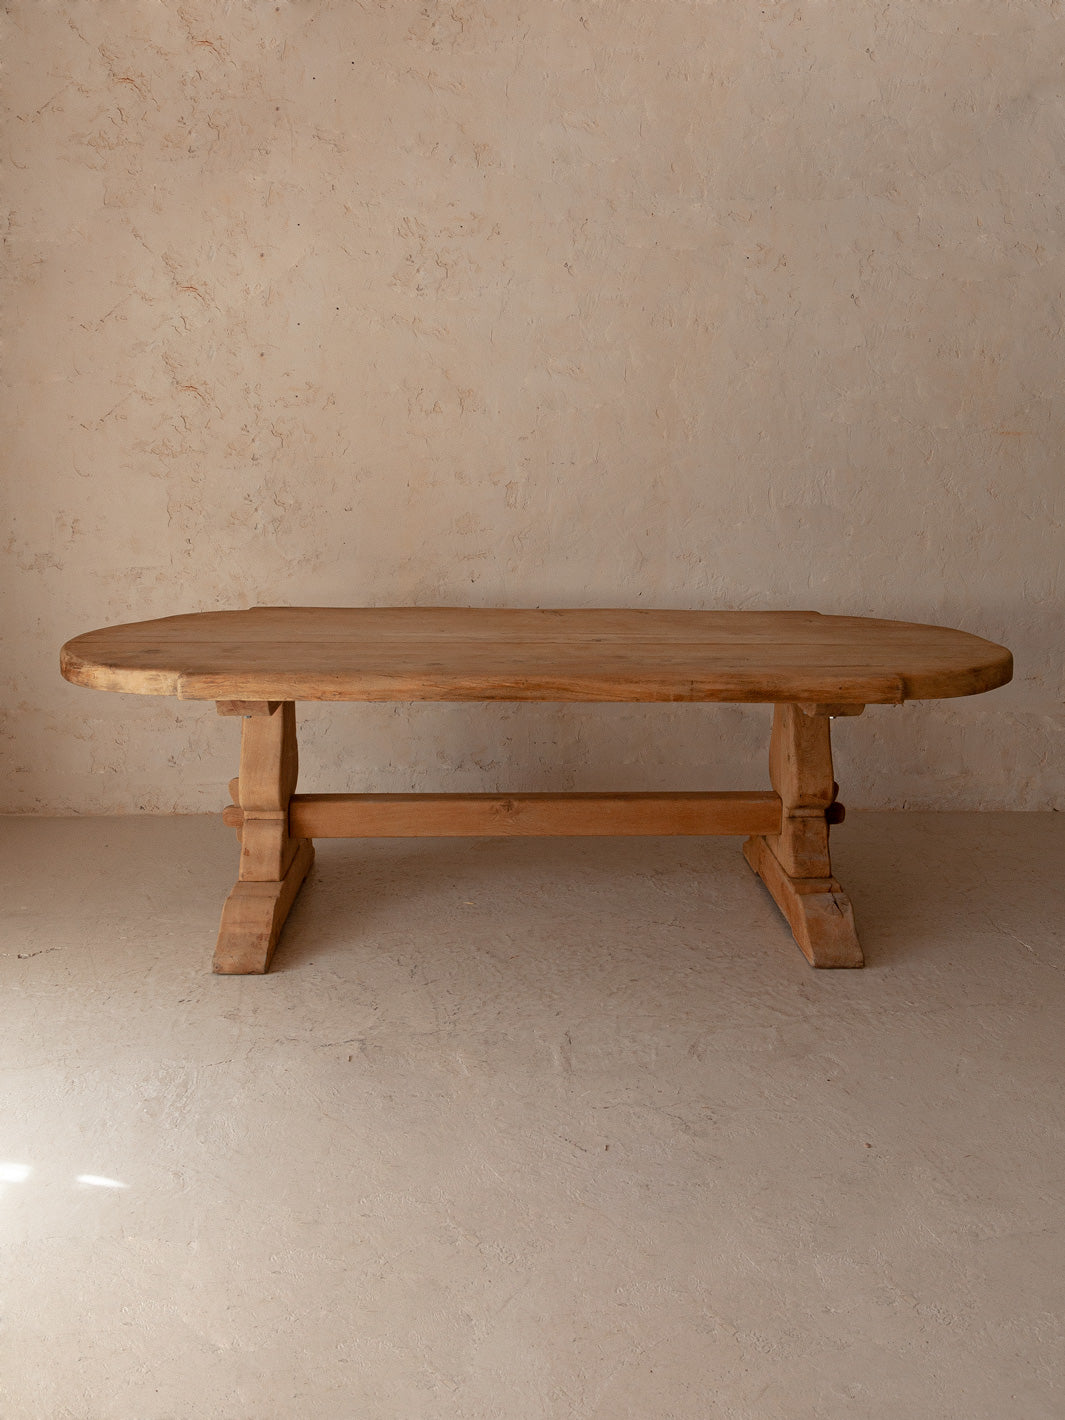 19th century chestnut oval Monastery table 240CM